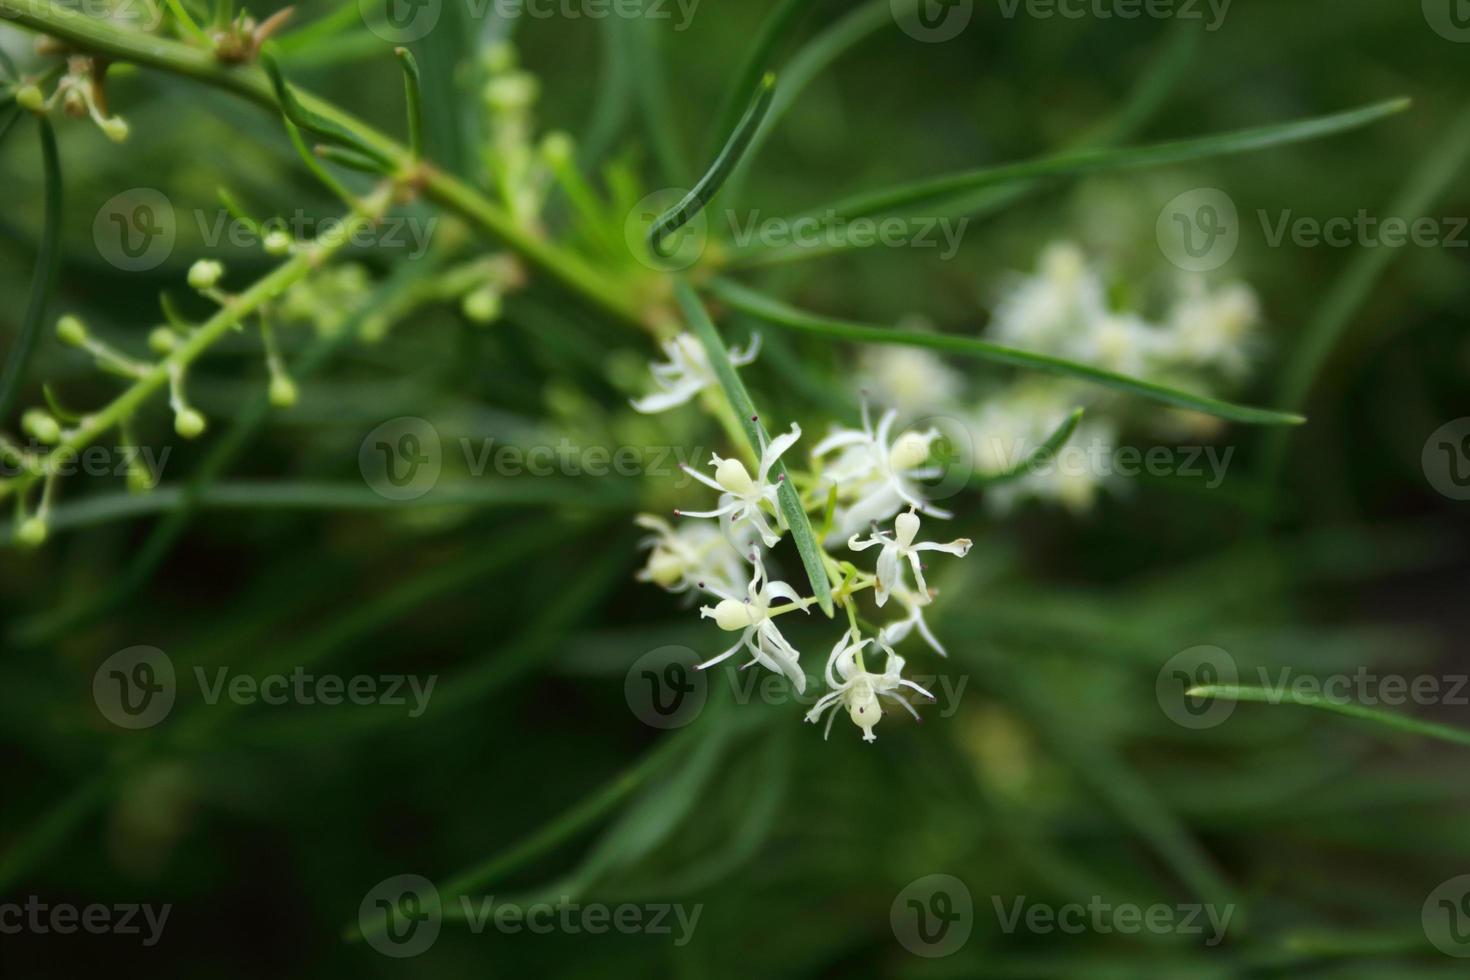 fiore bianco di shatavari che fiorisce sul ramo e sfoca lo sfondo delle foglie verdi. foto